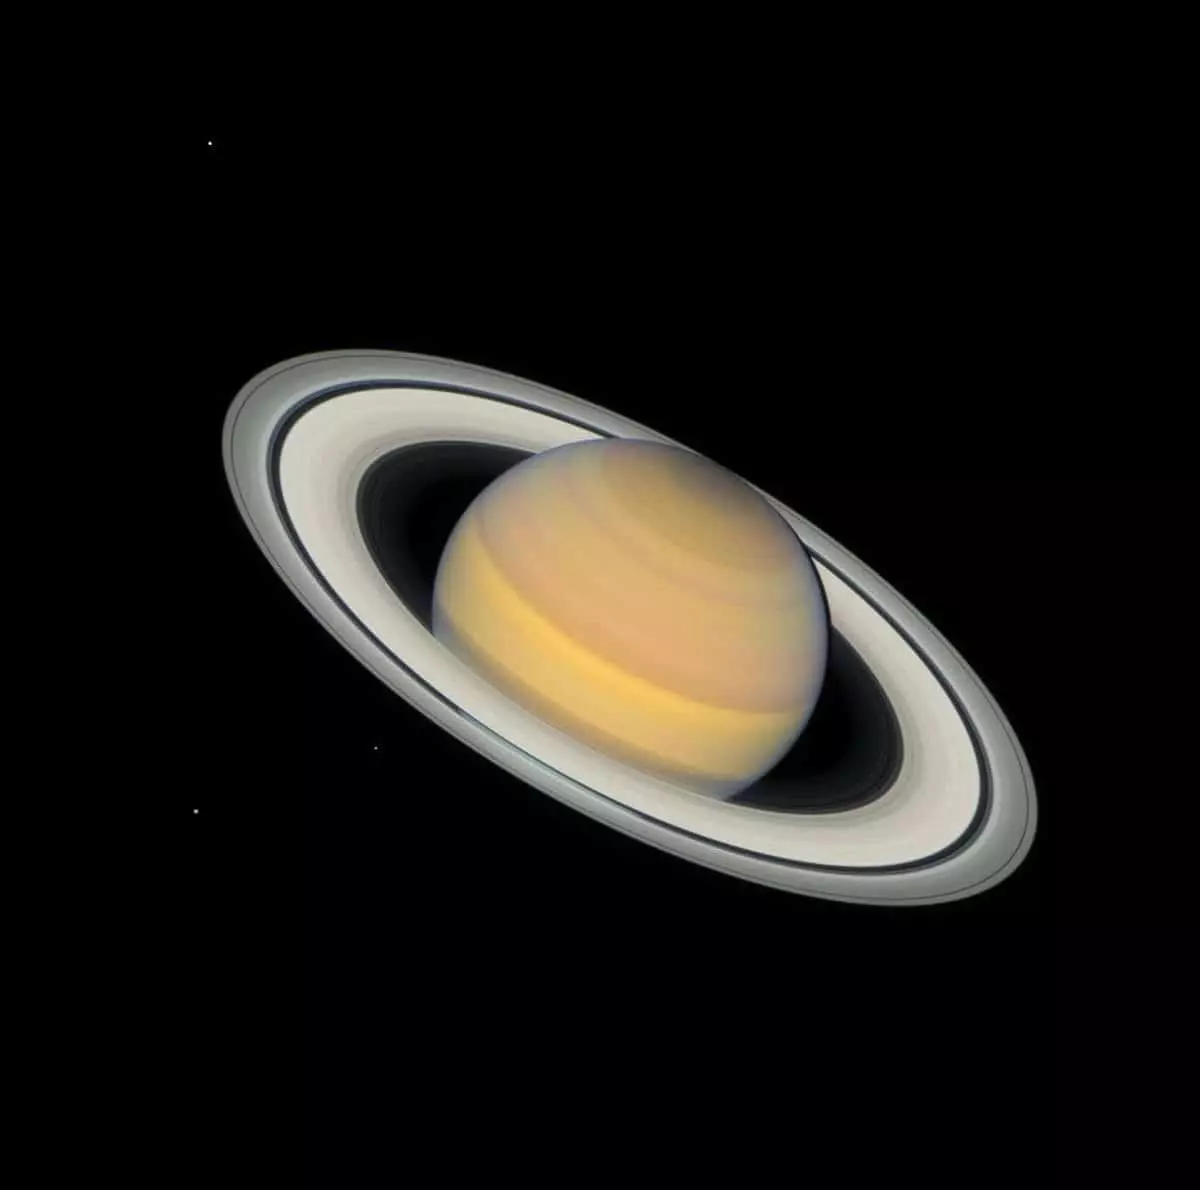 Saturn 4 maja